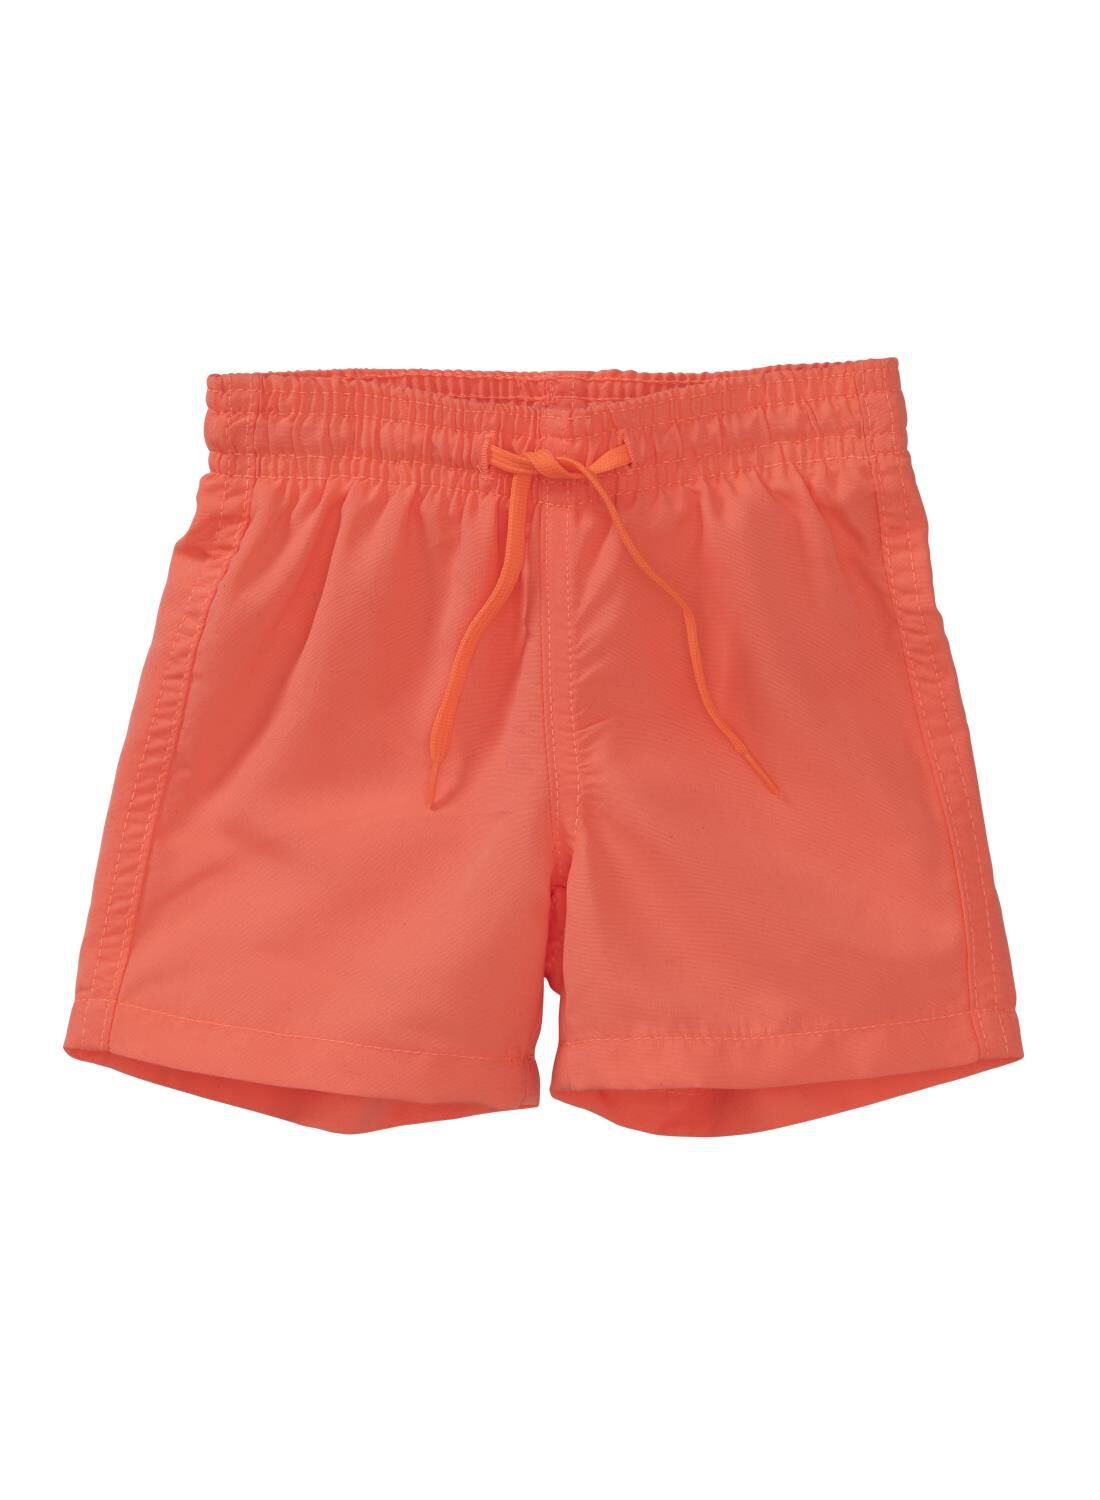 Baby Zwemshort Oranje (oranje)